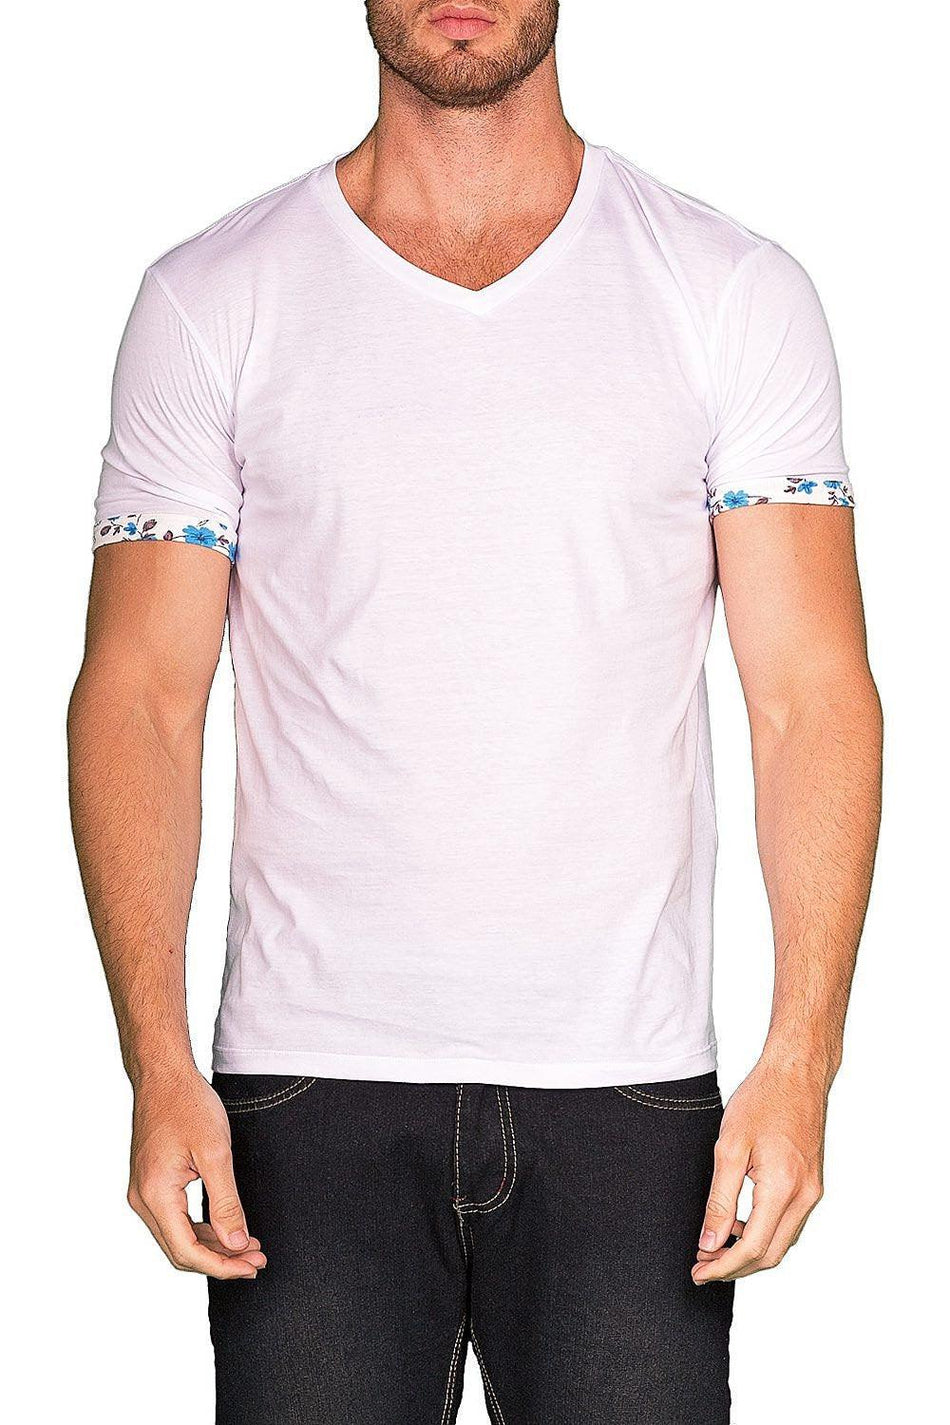 BESPOKE SPORT - White Mens T Shirt - 161543 - www.bespokemoda.com